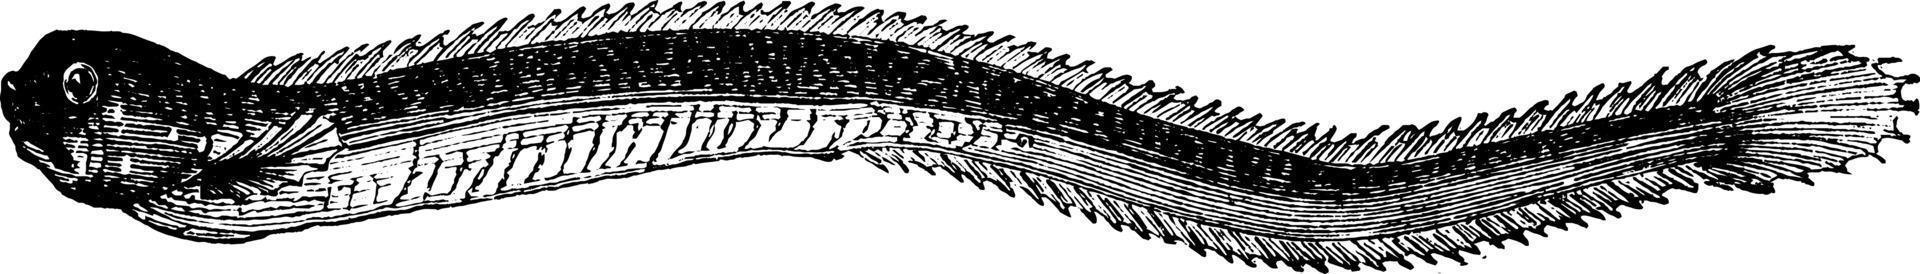 Ophidium, vintage illustration. vector